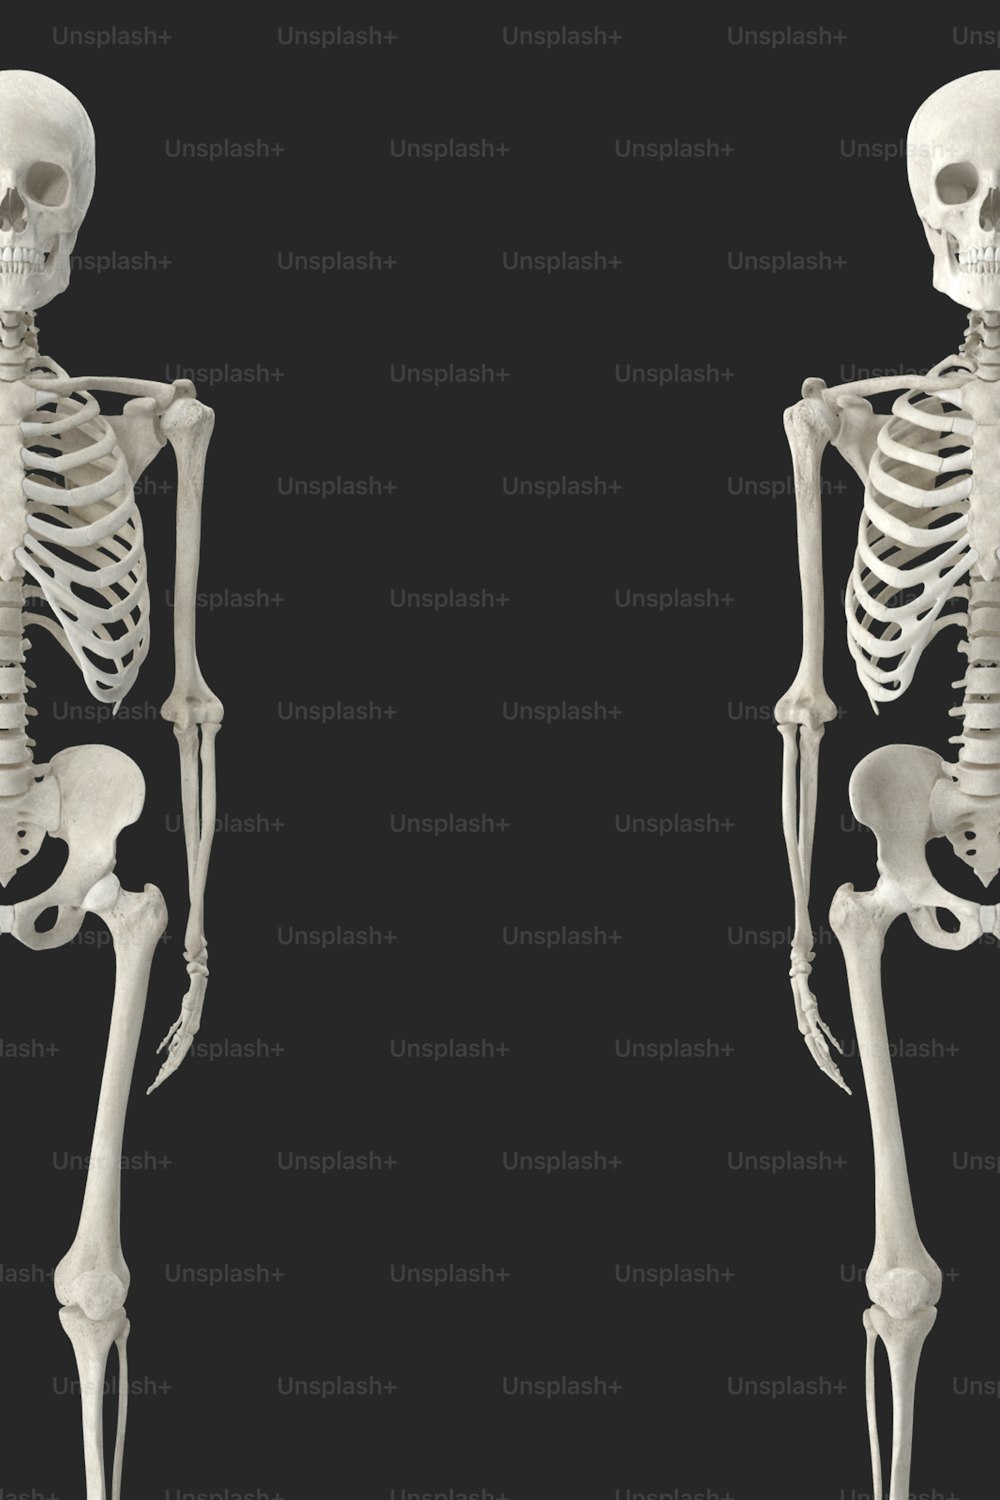 Un'immagine di uno scheletro umano con uno sfondo nero